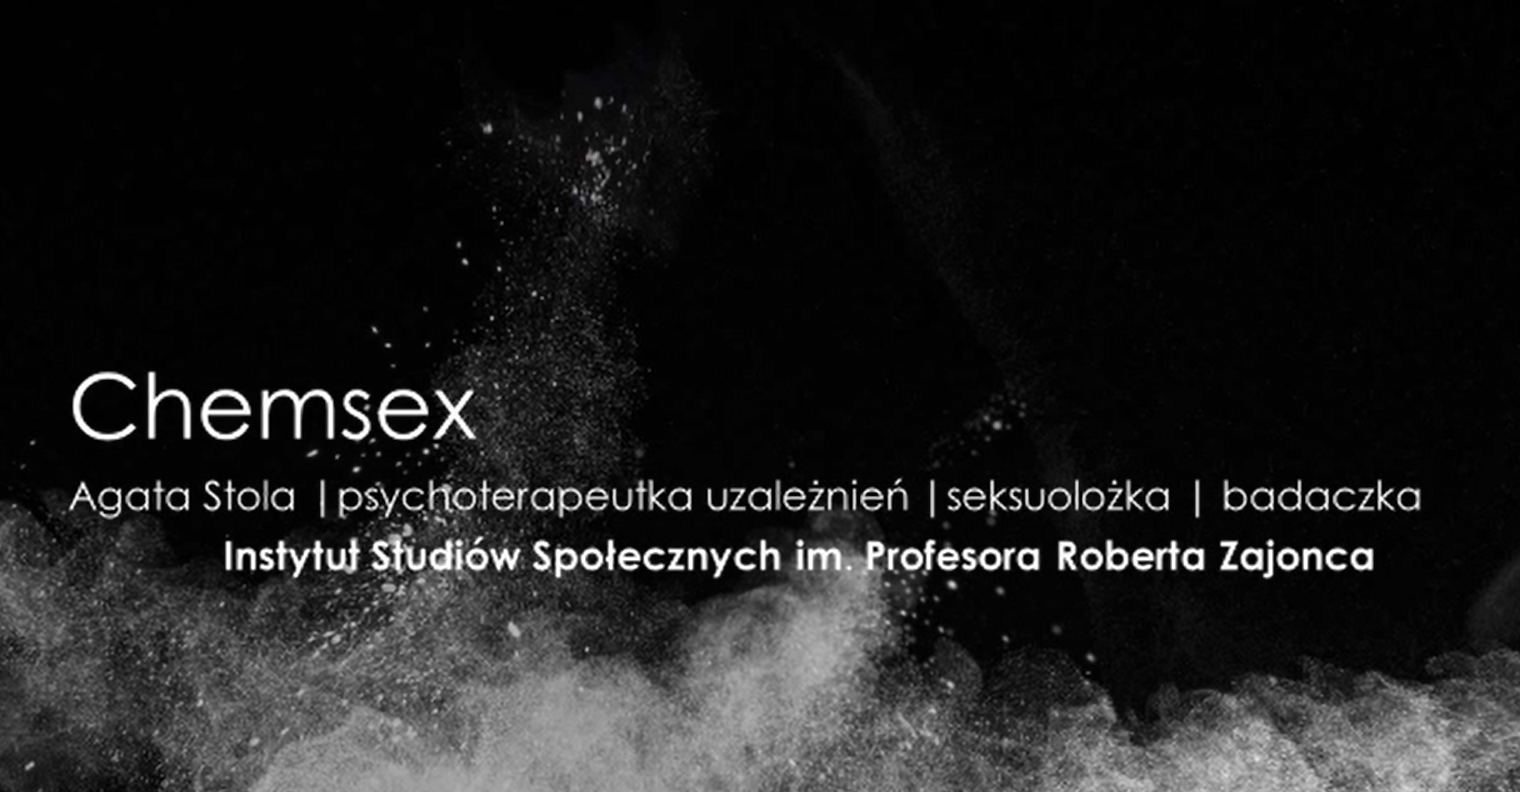 Chemsex - prezentacja